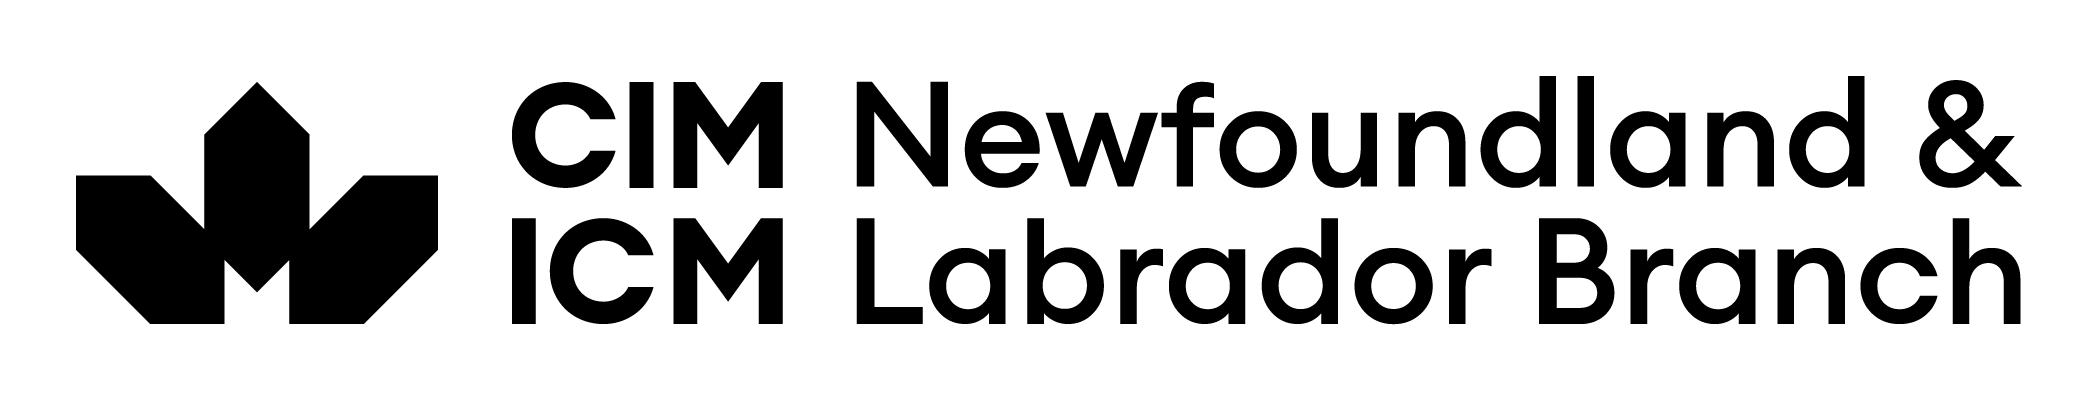 CIM - Brand Package - Newfoundland and Labrador Branch Black Logo (17Sep23)